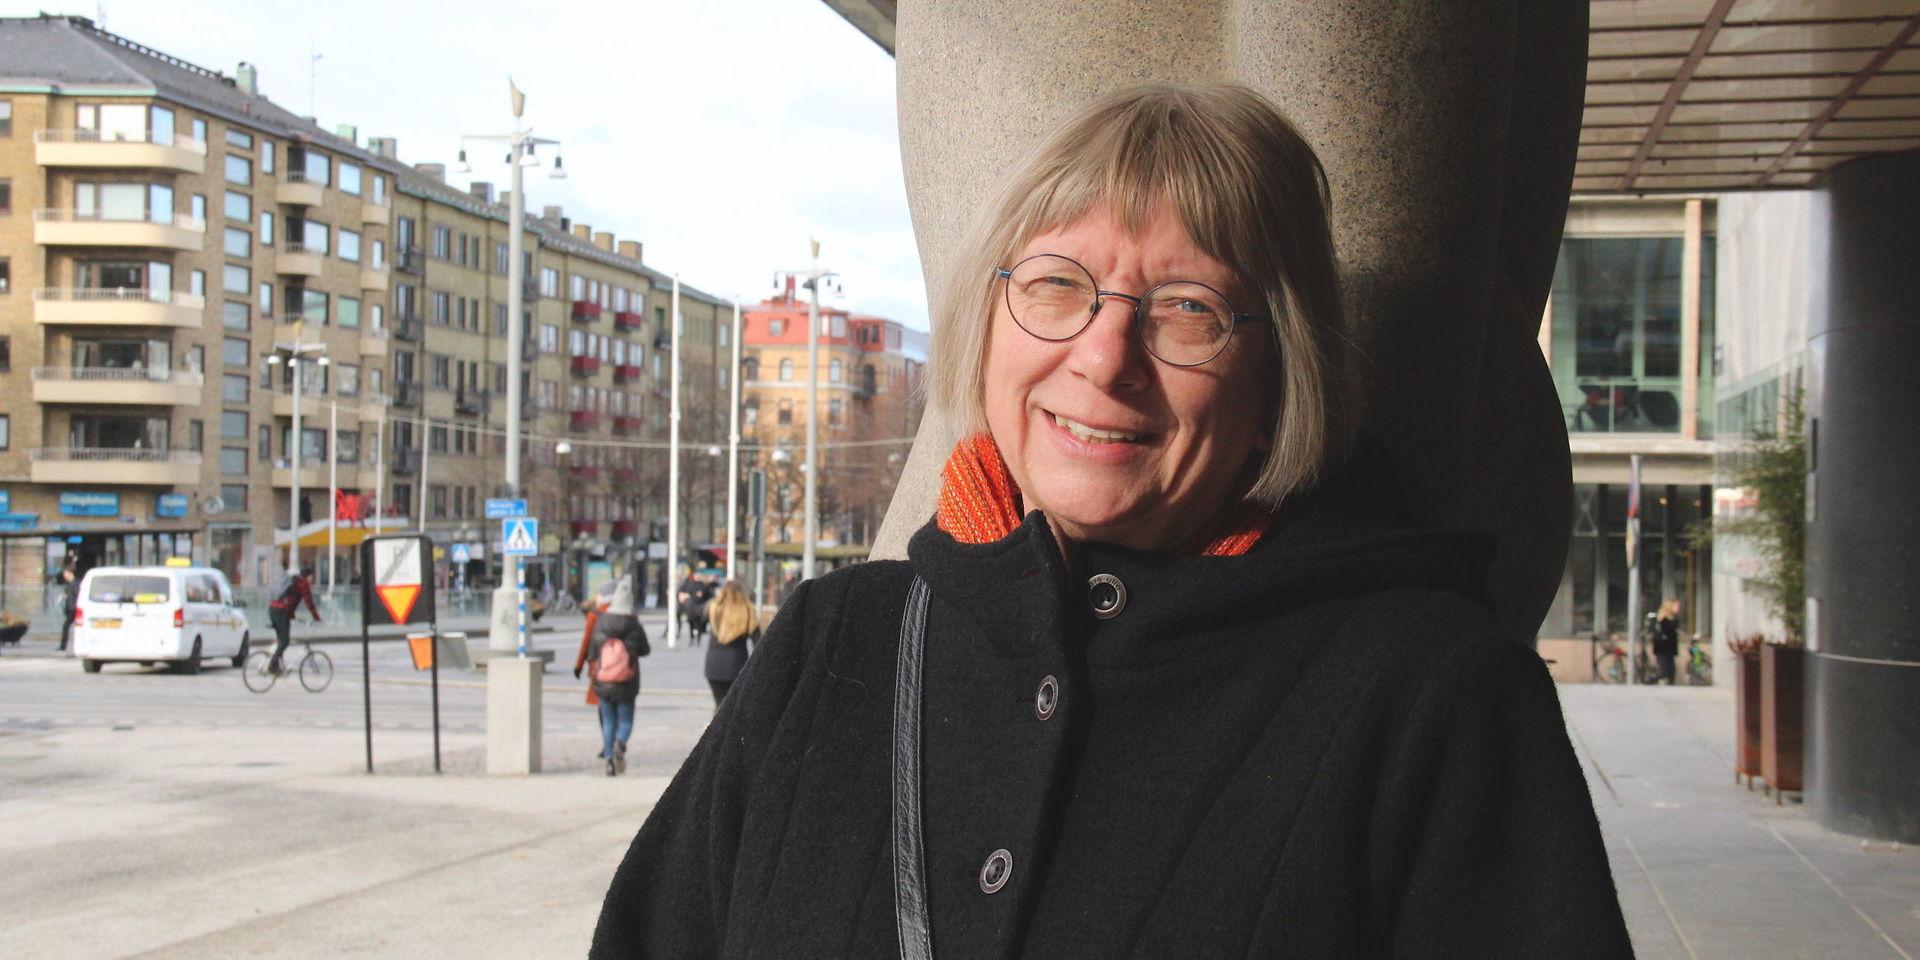 Maria Olsson har varit föreståndare och kurator på Minna-mottagningen i 30 år, men nu går hon i pension. &quot;Fortfarande upplever kvinnor en skam i det ensamma mödraskapet&quot;, konstaterar hon.